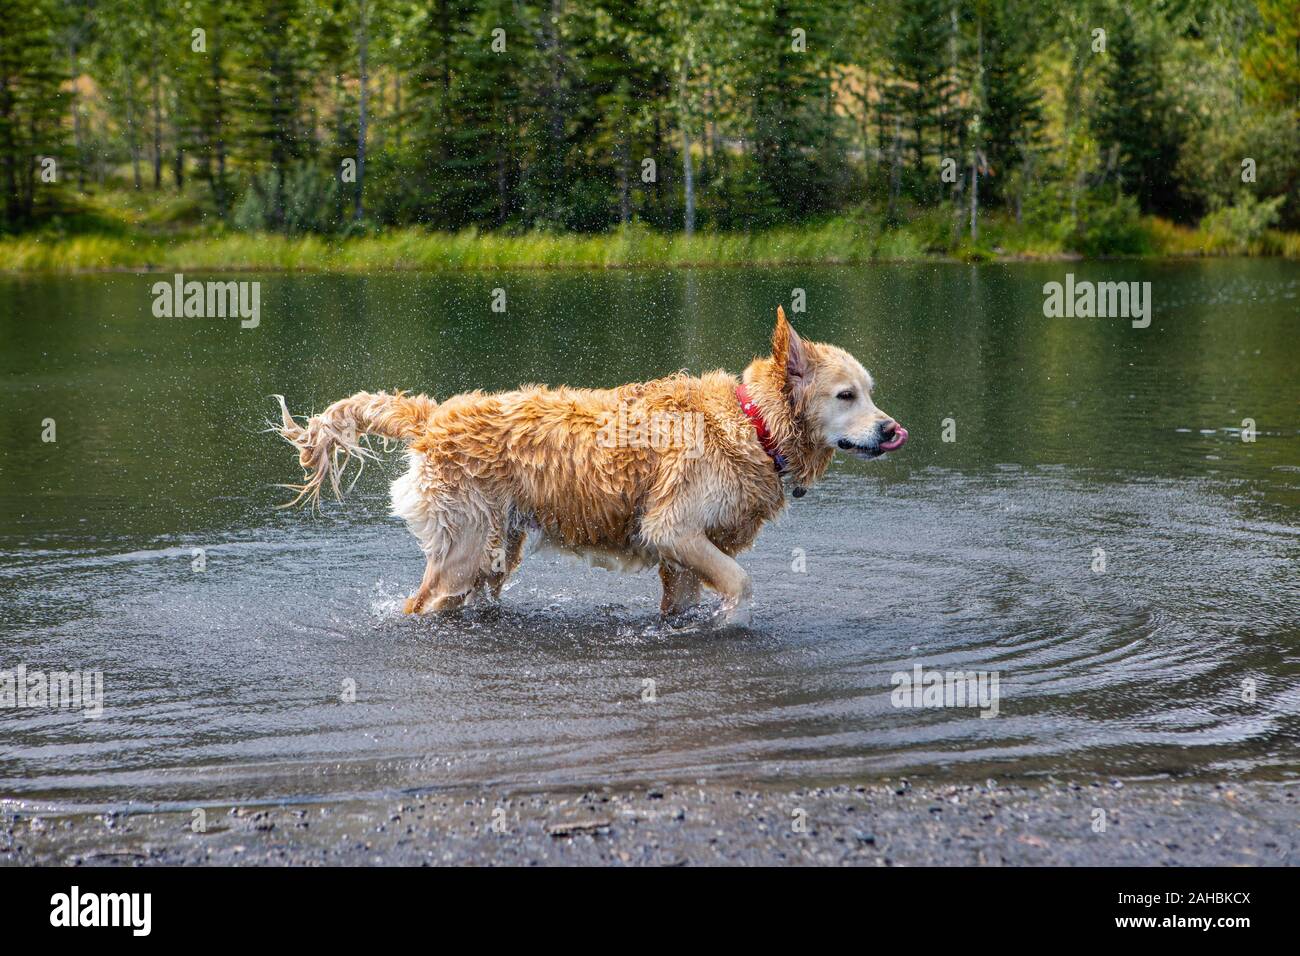 Braun schöner Hund, ähnlich der Golden Retriever, die im Wasser spielt. Mit  dem Spritzer und Tropfen auf seine langen Haare spritzen die Tropfen  Stockfotografie - Alamy